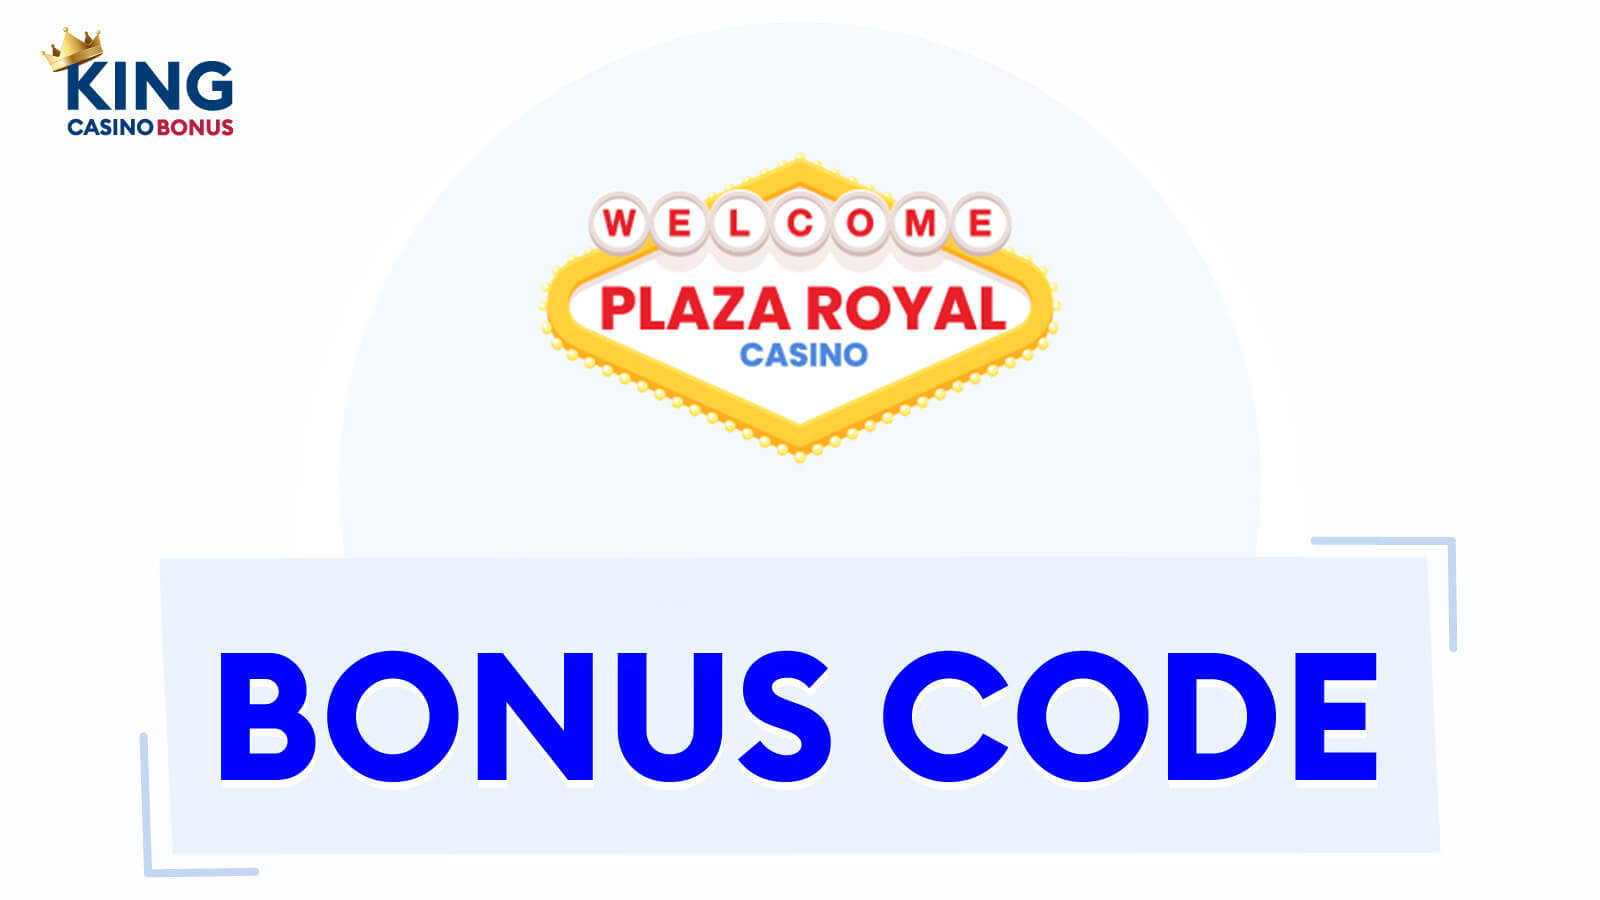 Plaza Royal Bonuses